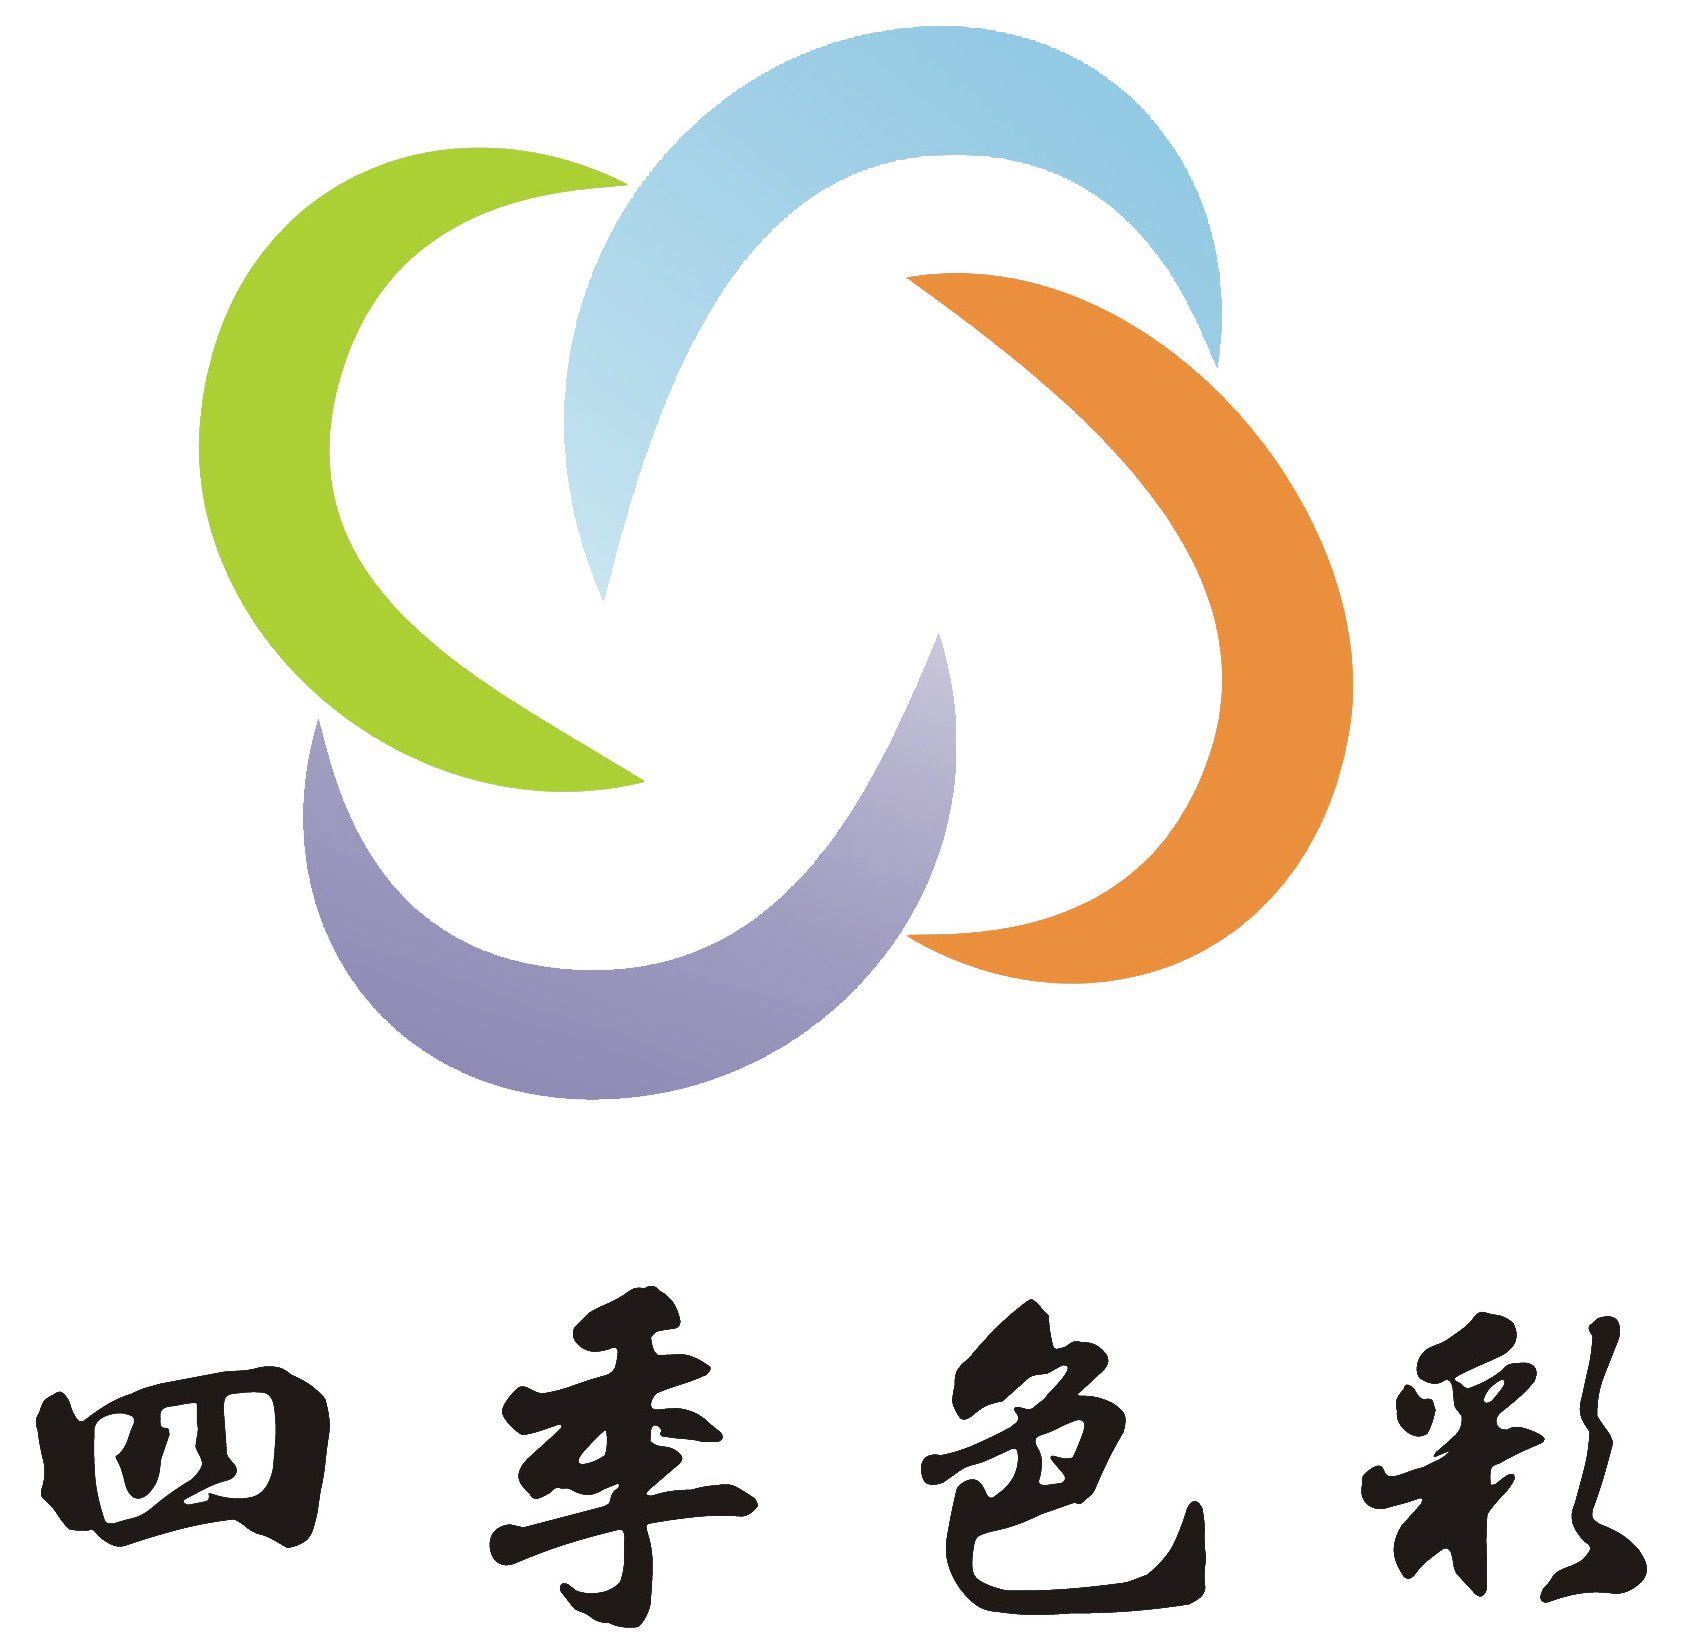 武汉四季色彩形象设计有限公司